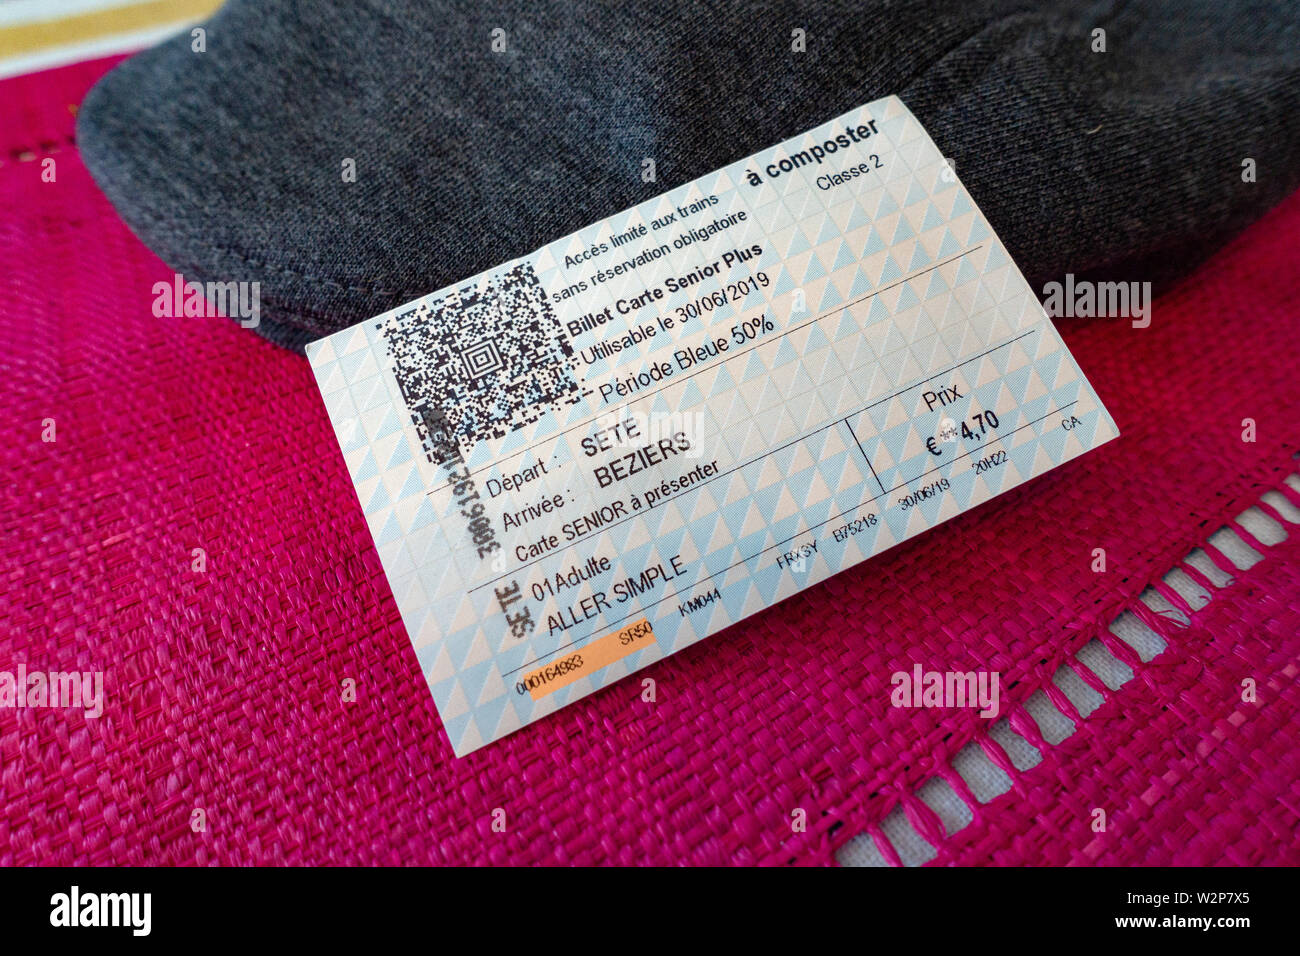 Senior Citizen incluyendo billete de tren SNCF descuento para el viaje en el sur de Francia. Foto de stock